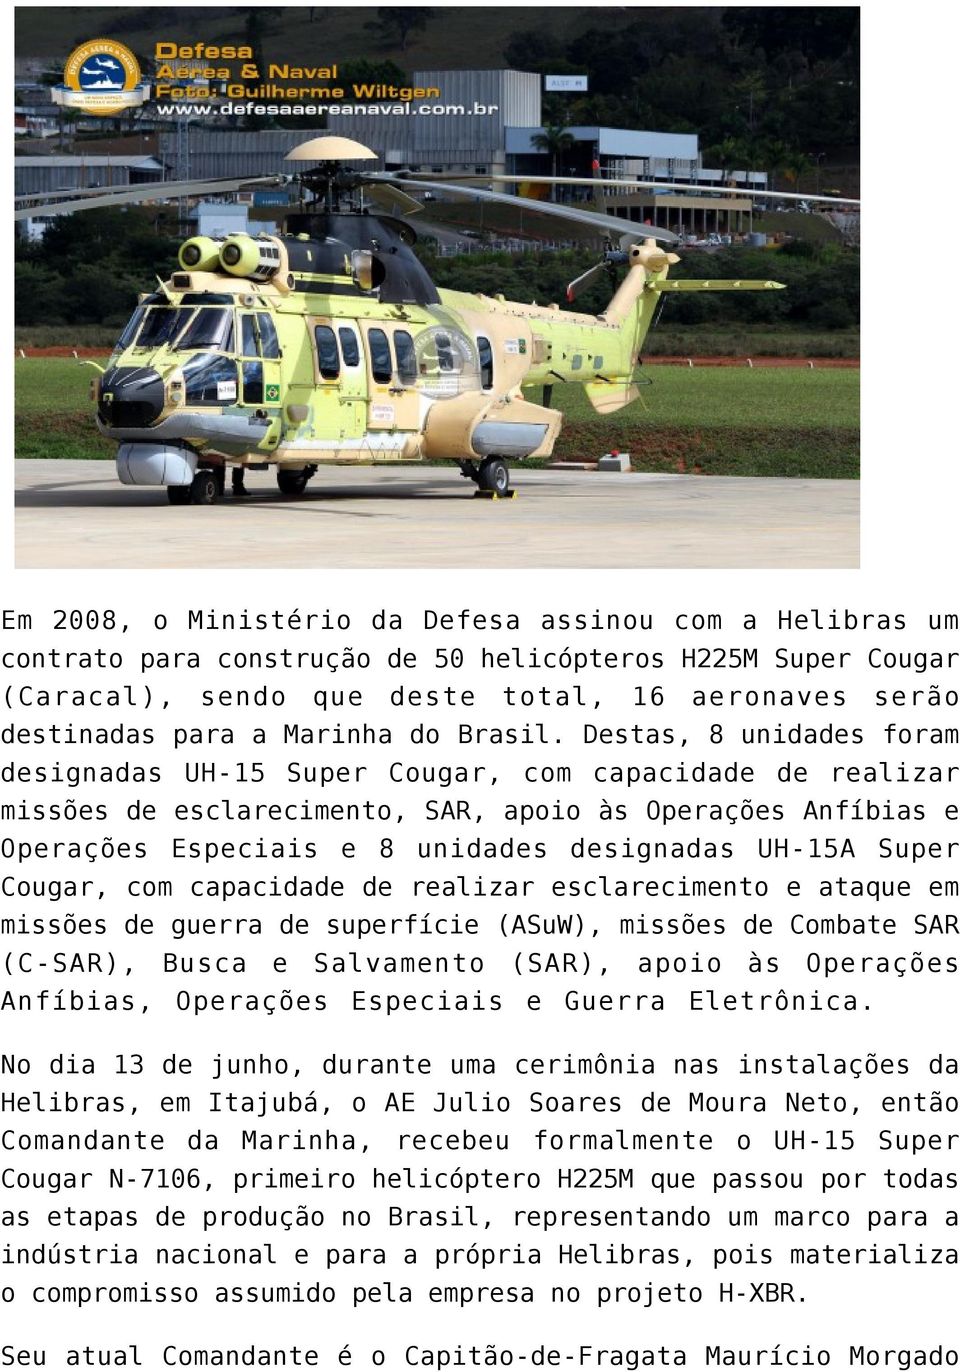 Destas, 8 unidades foram designadas UH-15 Super Cougar, com capacidade de realizar missões de esclarecimento, SAR, apoio às Operações Anfíbias e Operações Especiais e 8 unidades designadas UH-15A